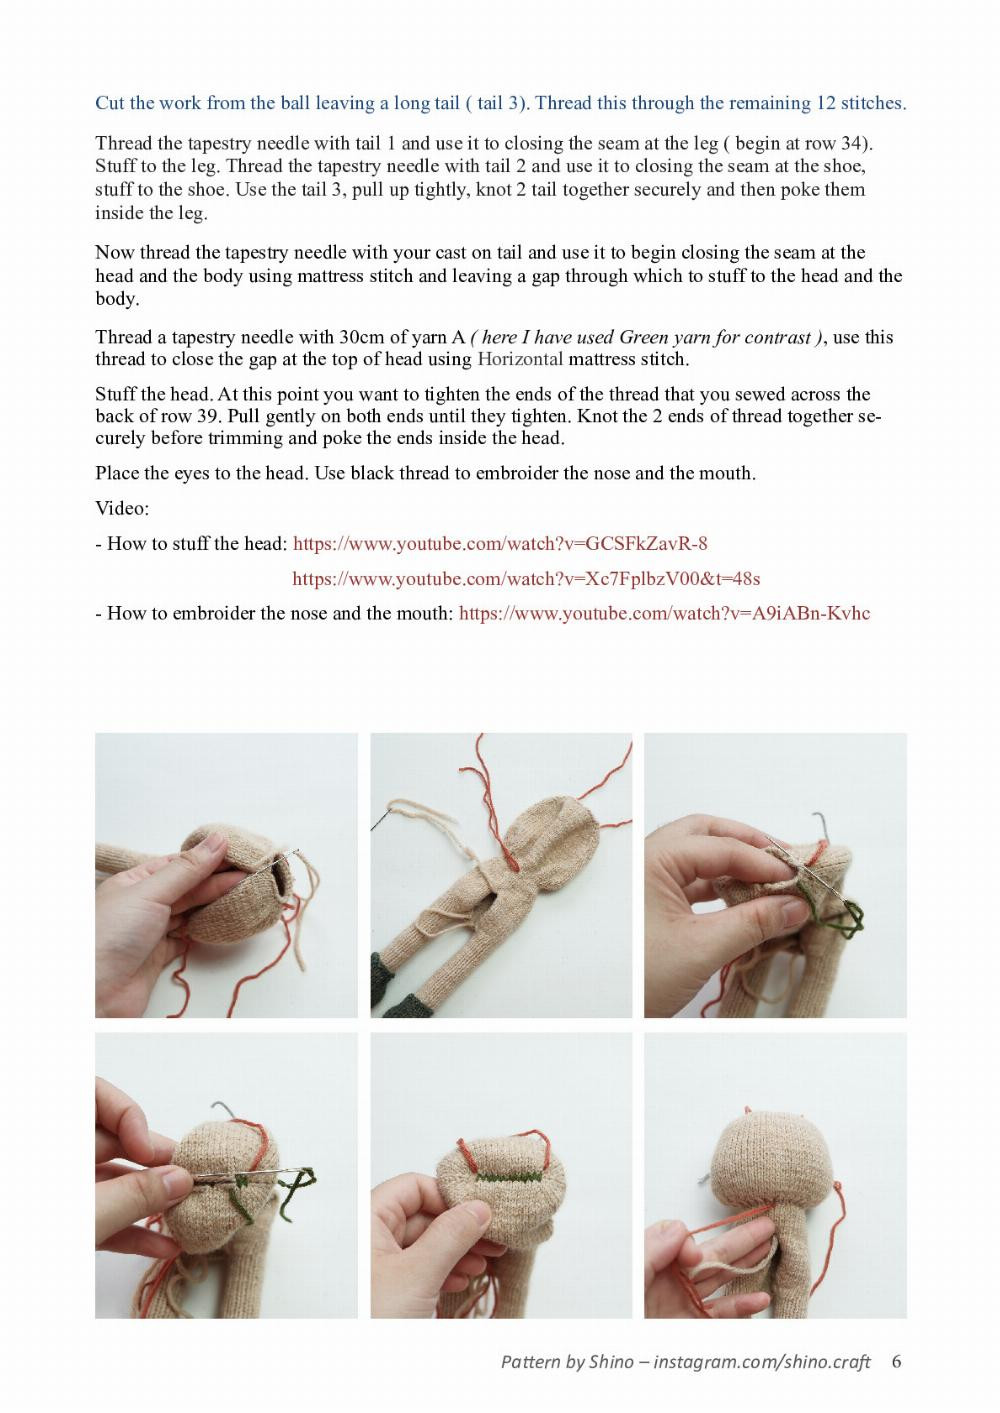 tun the rabbit crochet pattern